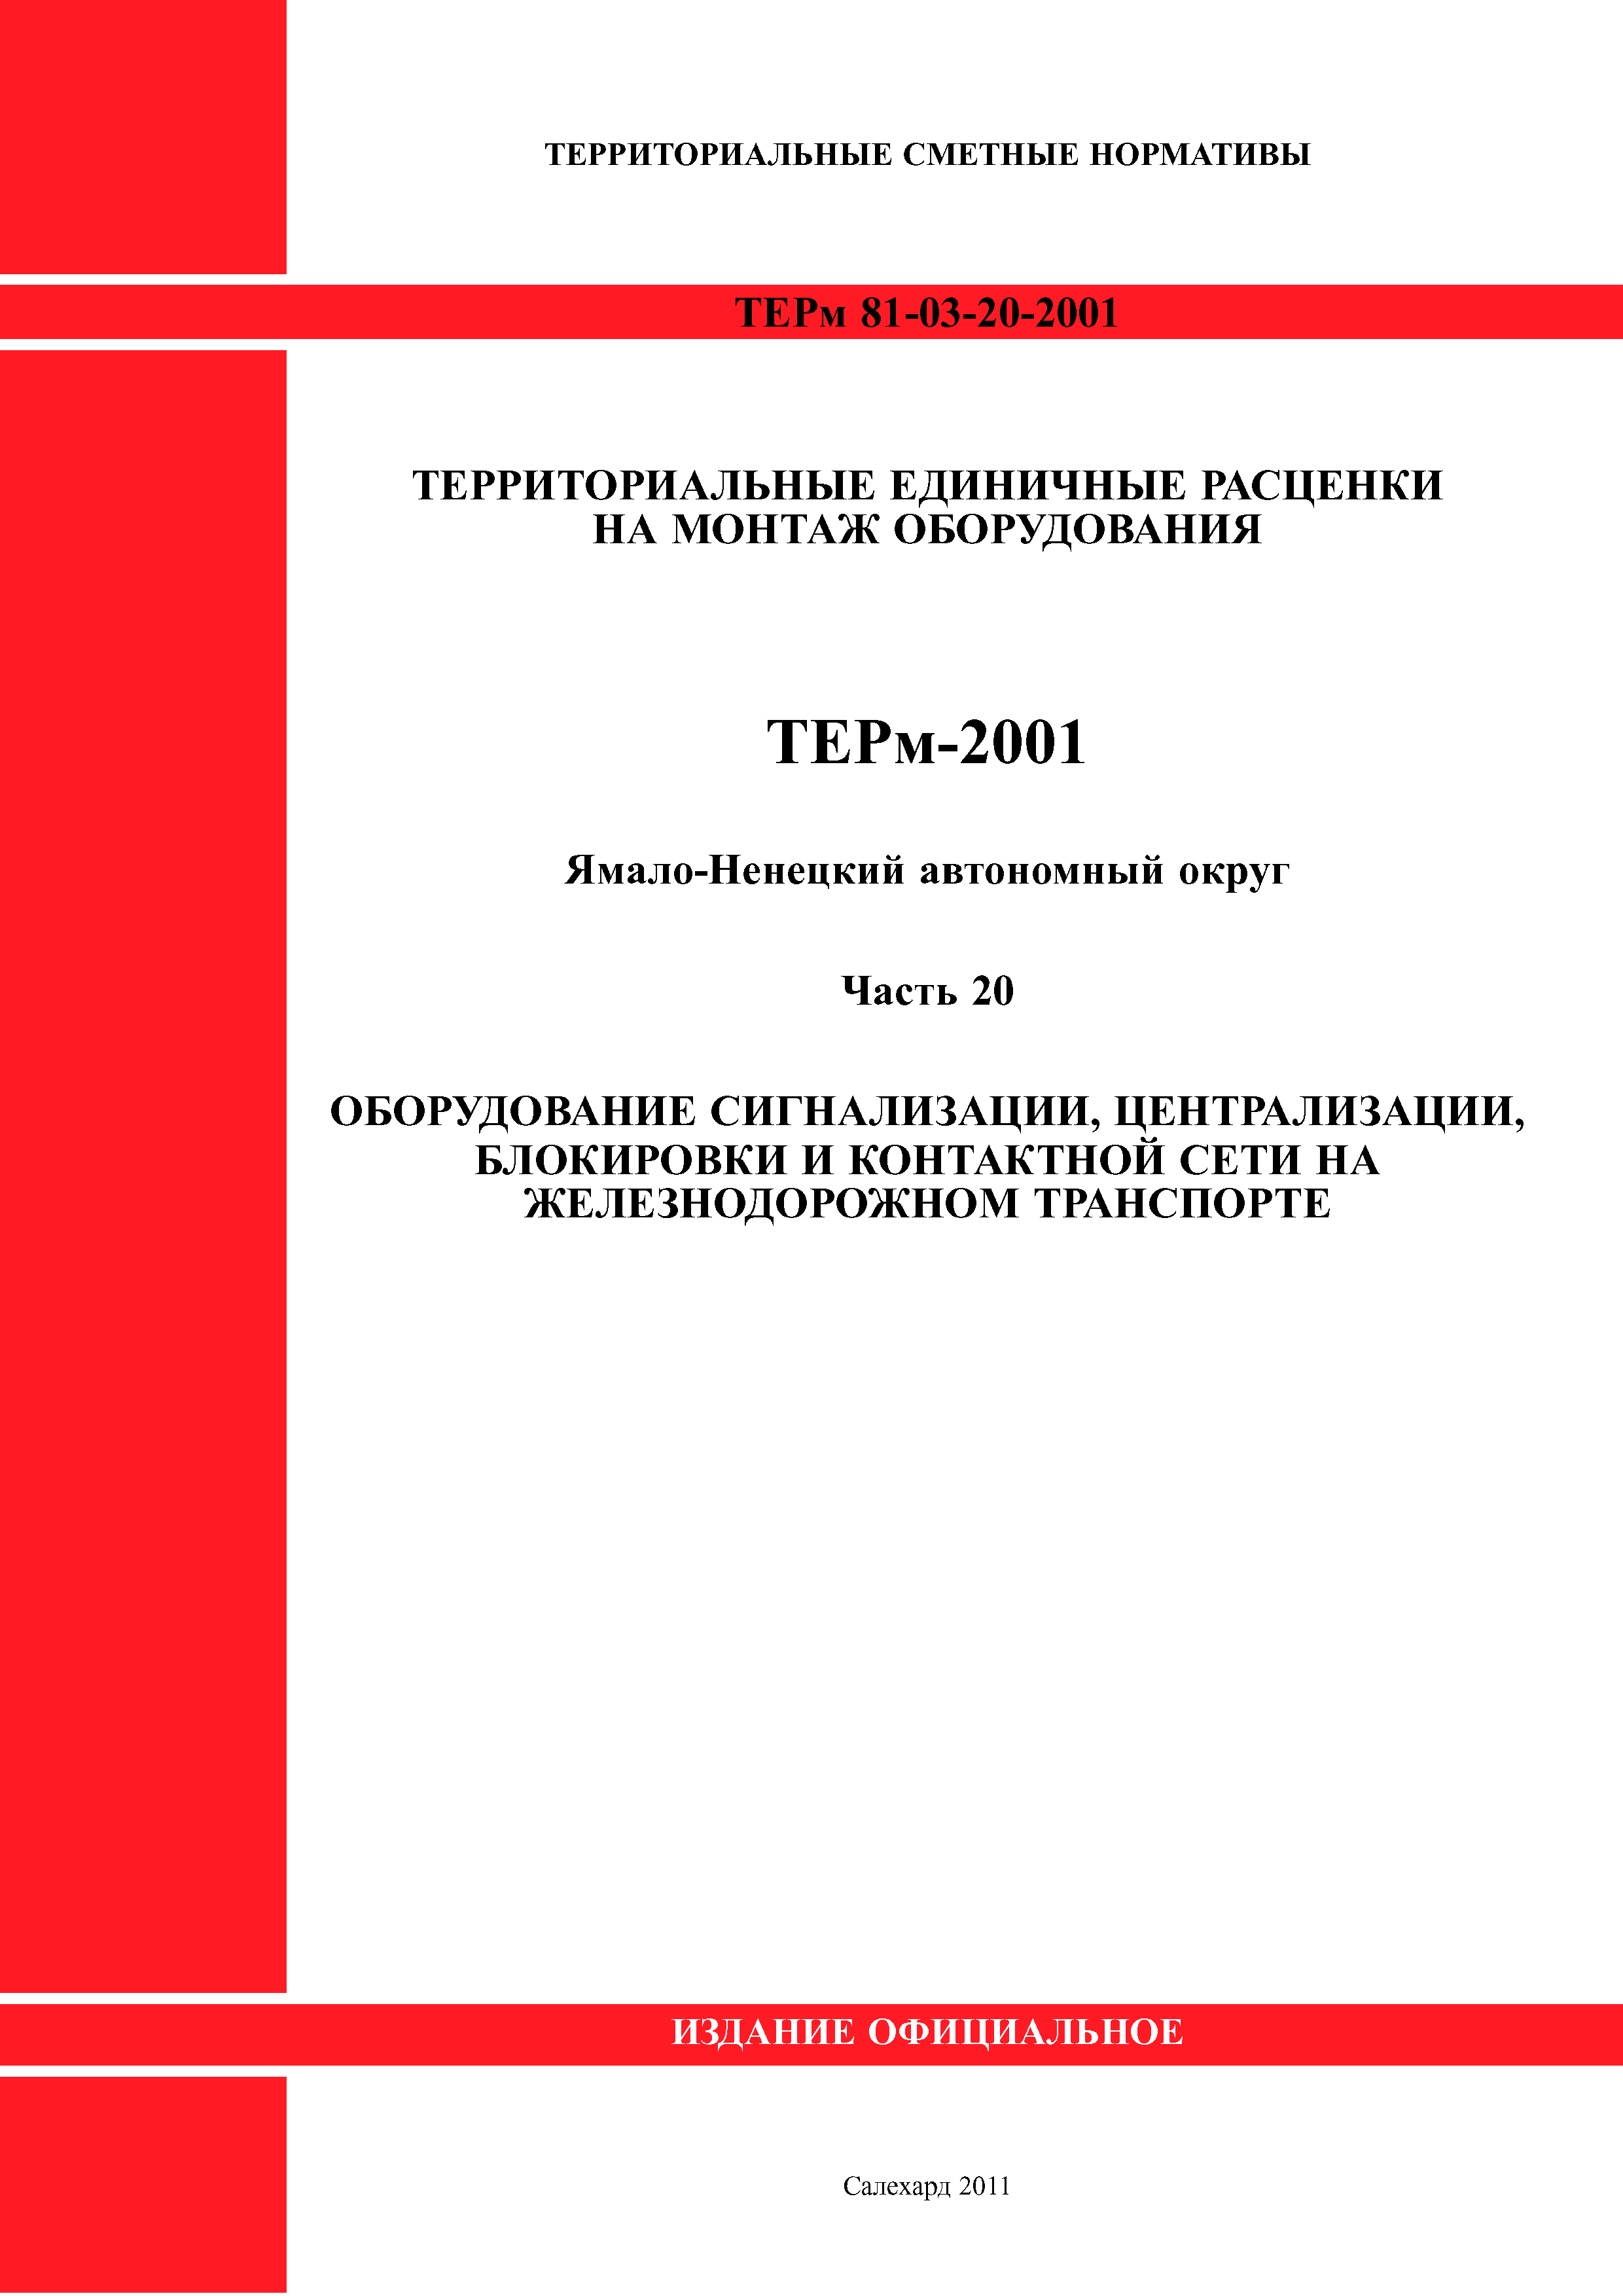 ТЕРм Ямало-Ненецкий автономный округ 20-2001